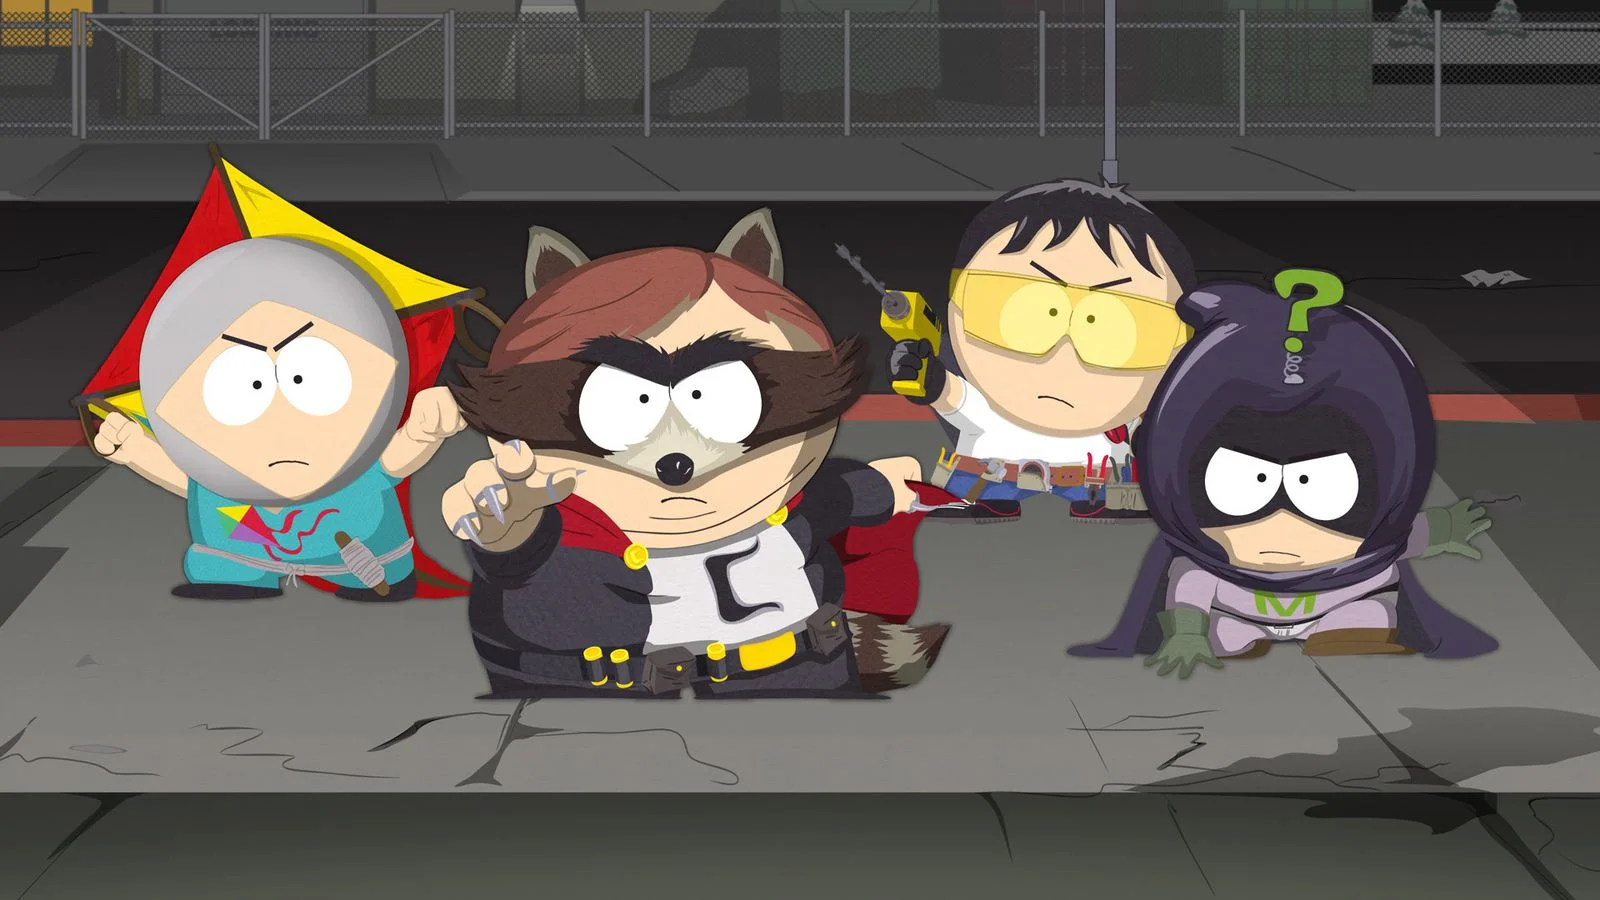 17 октября вышла South Park: The Fractured but Whole, рассказывающая о том, как дети из Южного парка пытаются создать свою супергеройскую франшизу. В игре, как и в сериале, полно шуток про могучих героев в латексе, поэтому мы решили вспомнить, как именно Мэтт Стоун и Трей Паркер высмеивают эту тему.